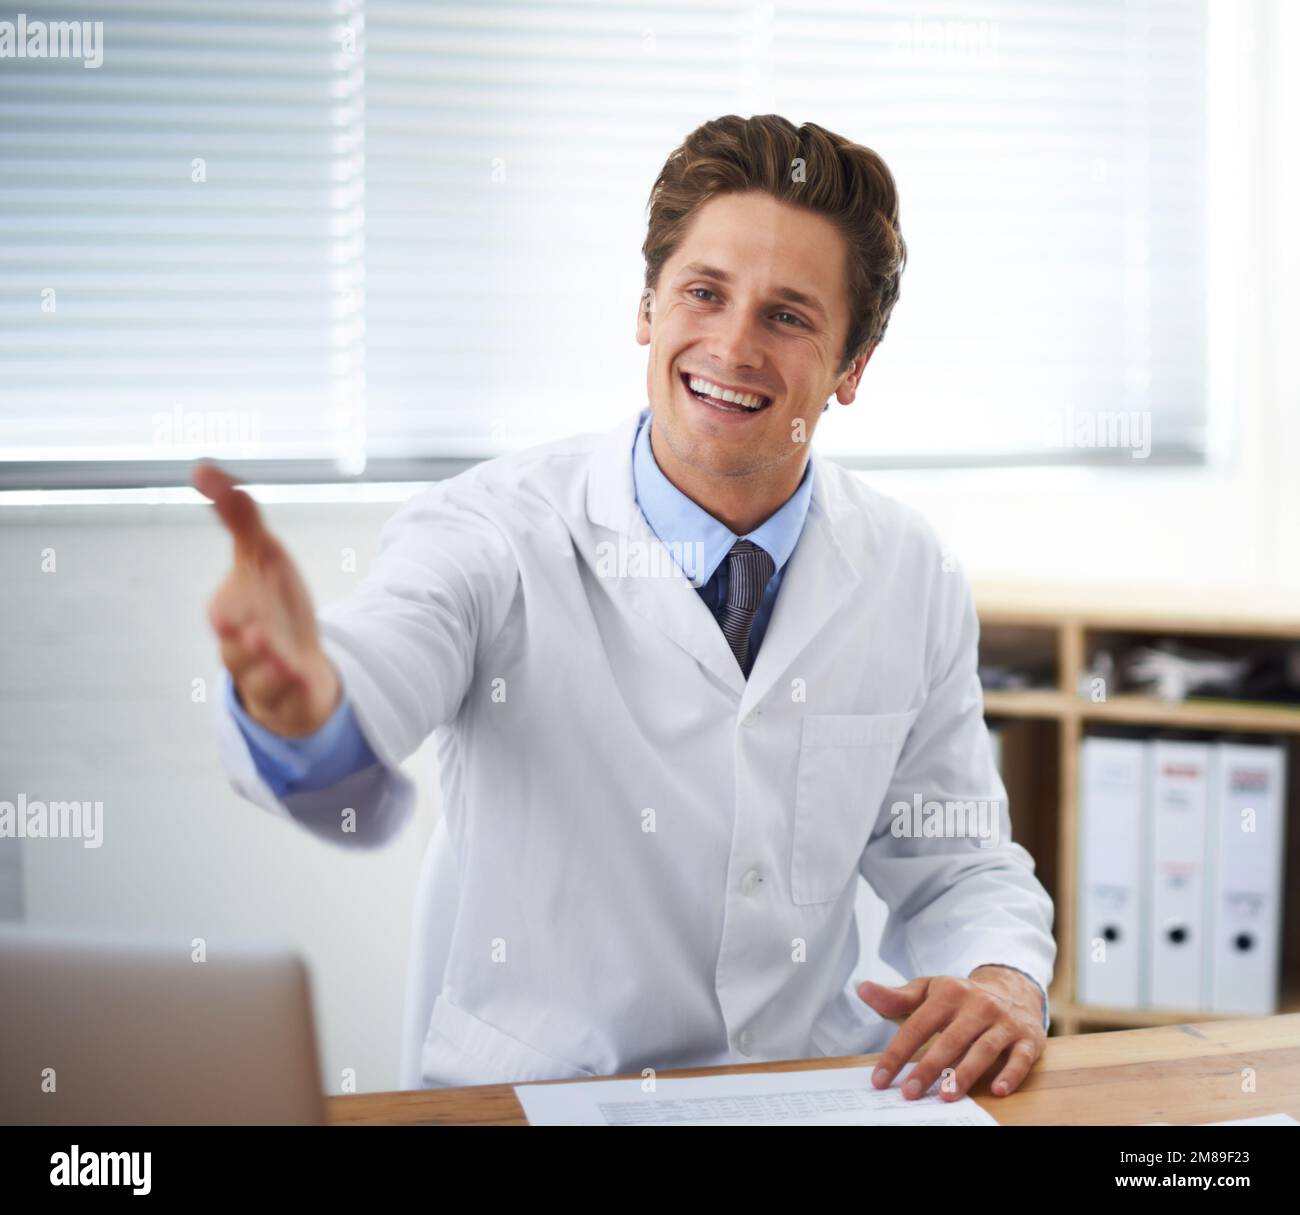 Je vous réjouis de pouvoir prendre rendez-vous. Portrait d'un jeune médecin à l'aspect positif assis dans son bureau et faisant un geste pour Entrez. Banque D'Images